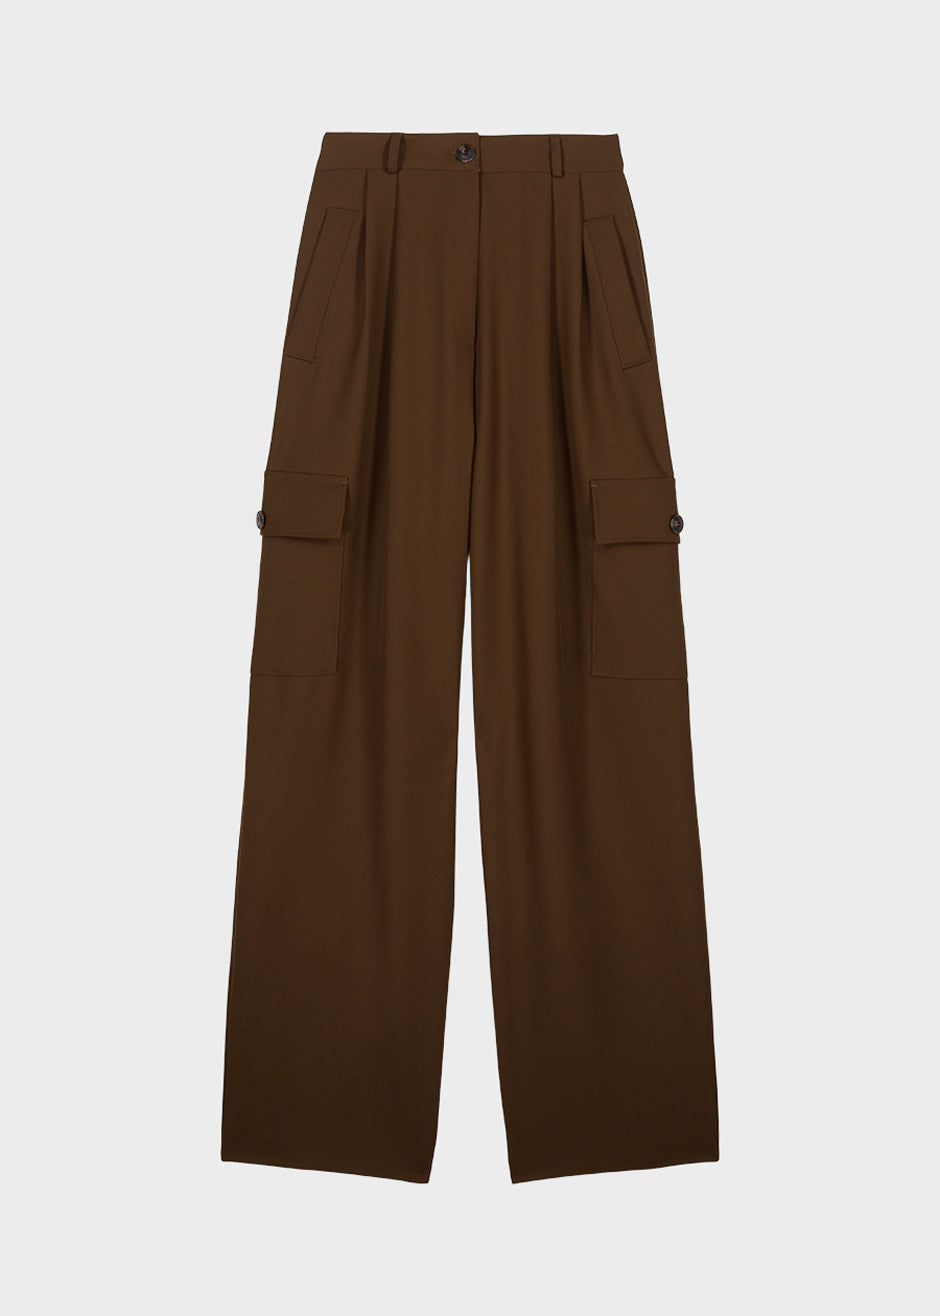 Maesa Cargo Pants - Brown - 9